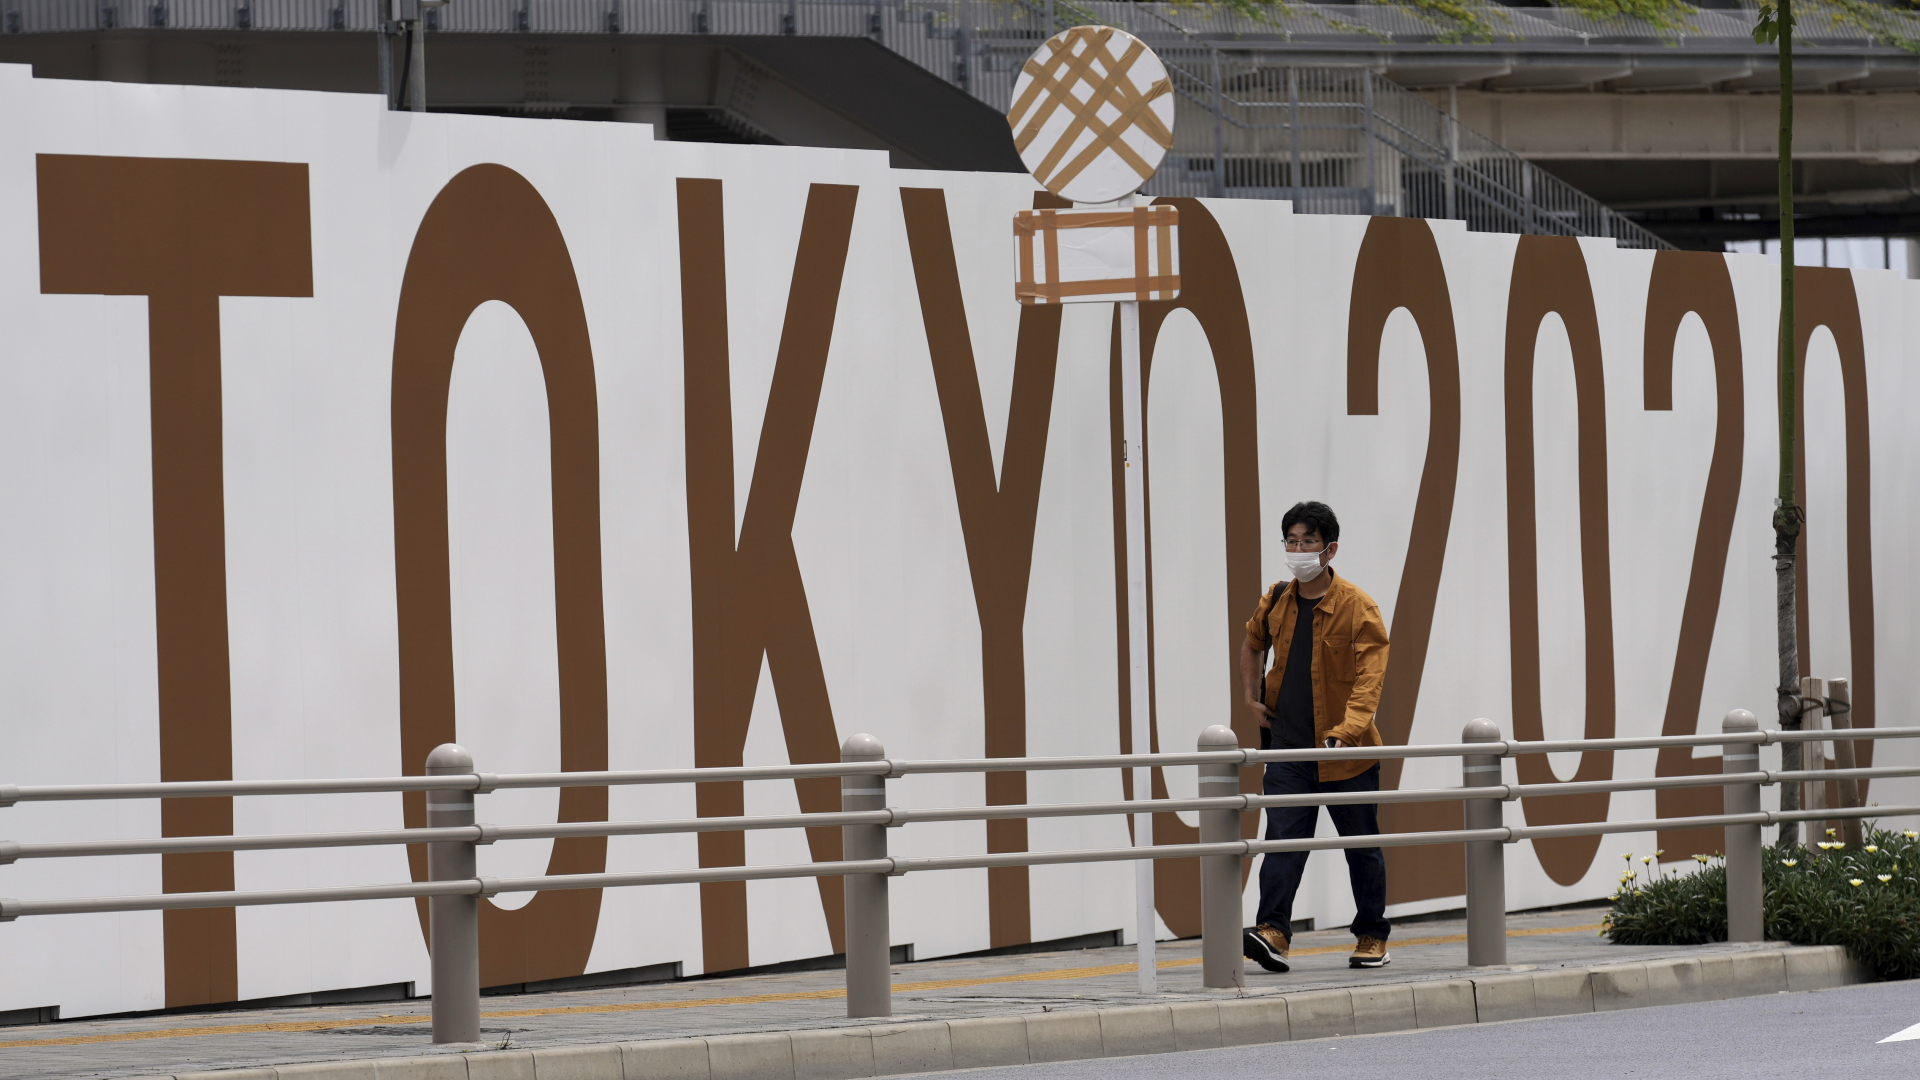 "Tokyo 2020" steht an einer Wand des Nationalstadions geschrieben, an der ein Mann vorbeigeht (Archivbild).